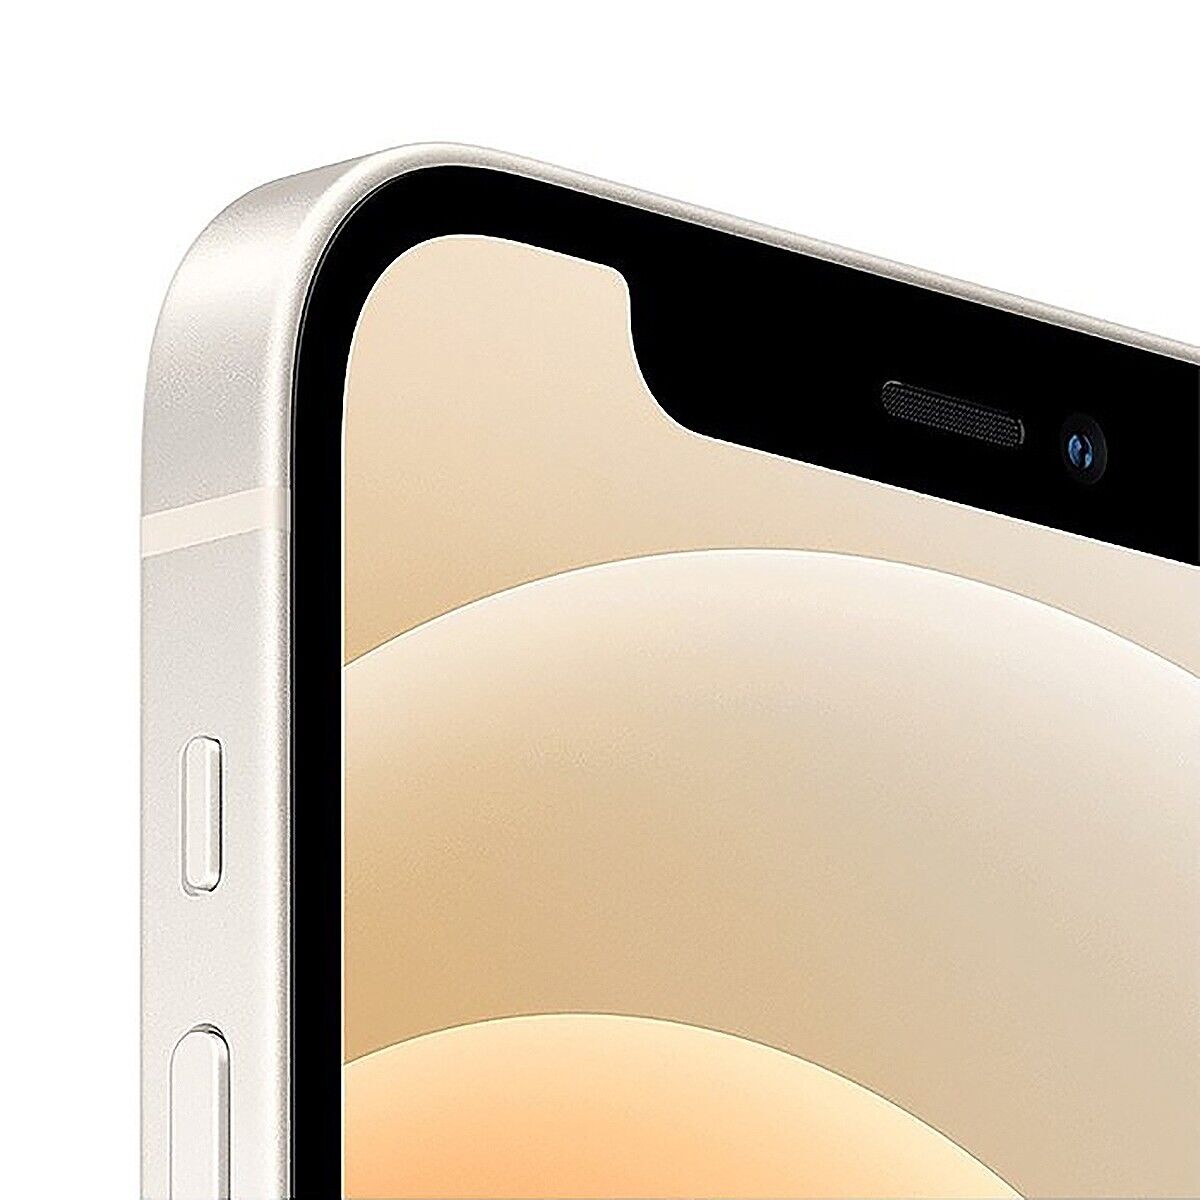 Apple iPhone 12 mini 5G 128GB White Unlocked T-Mobile AT&T Verizon